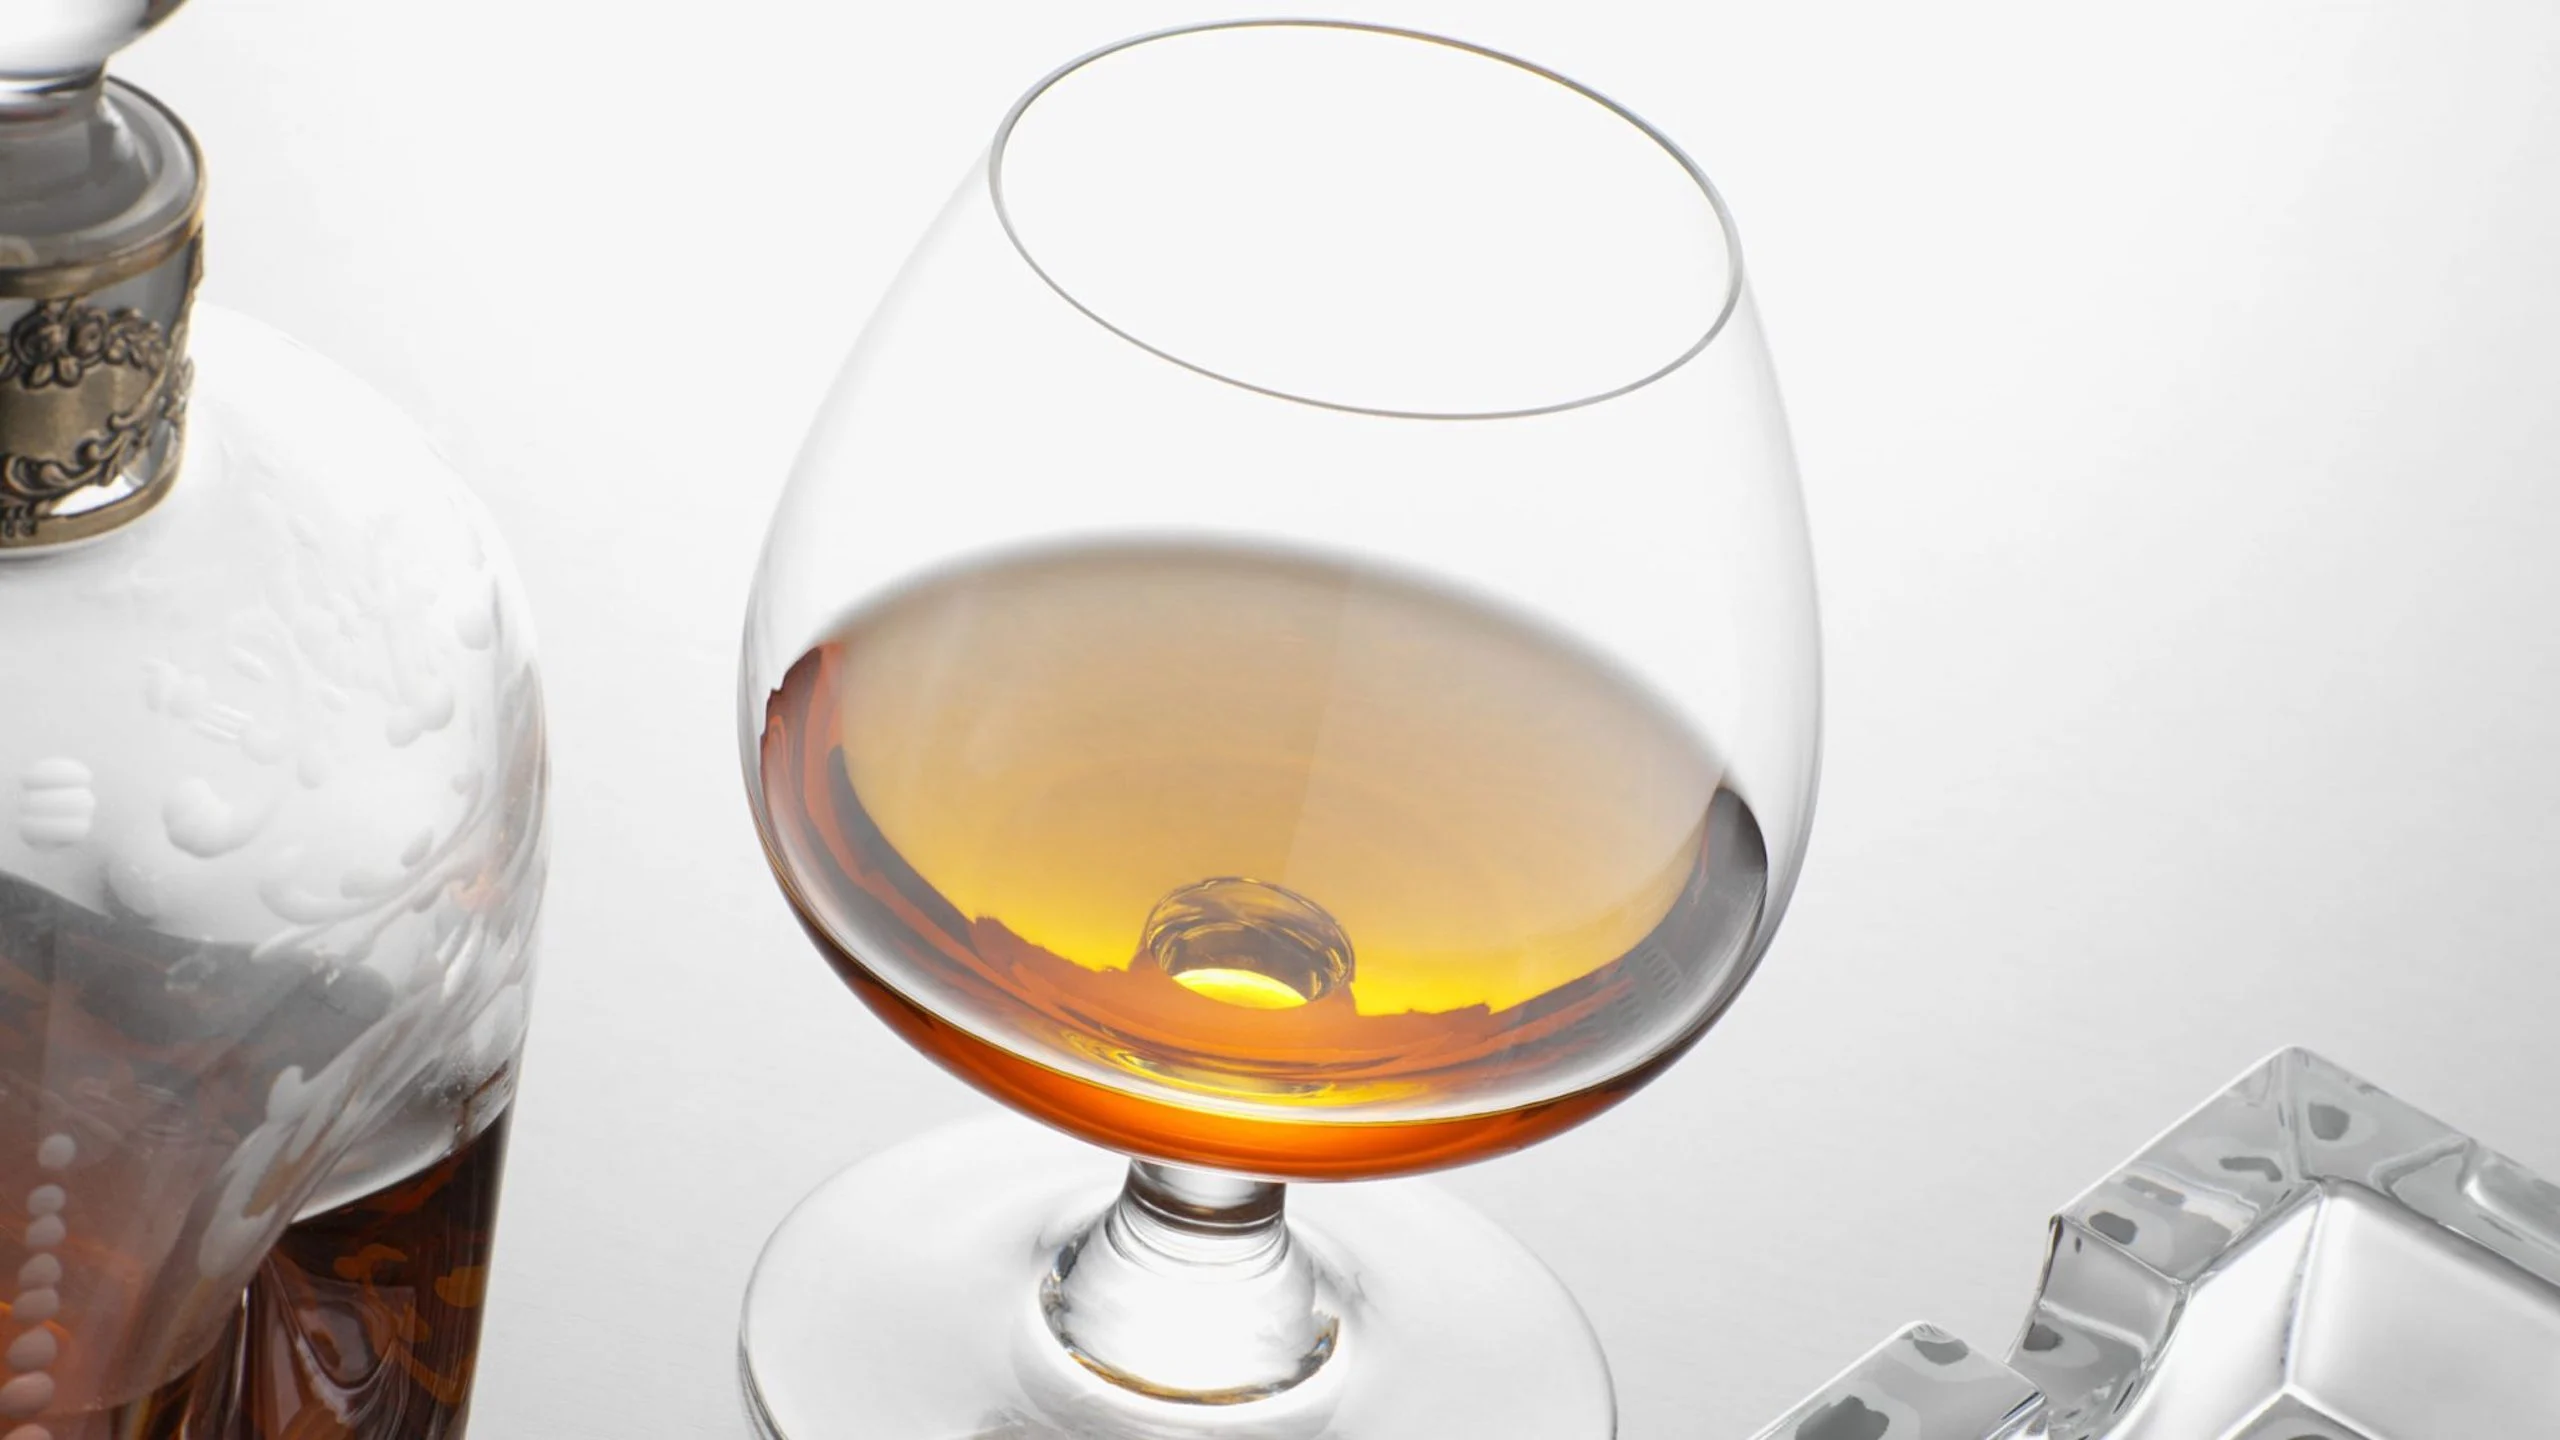 La botella más cara del mundo es un cognac de 258 años